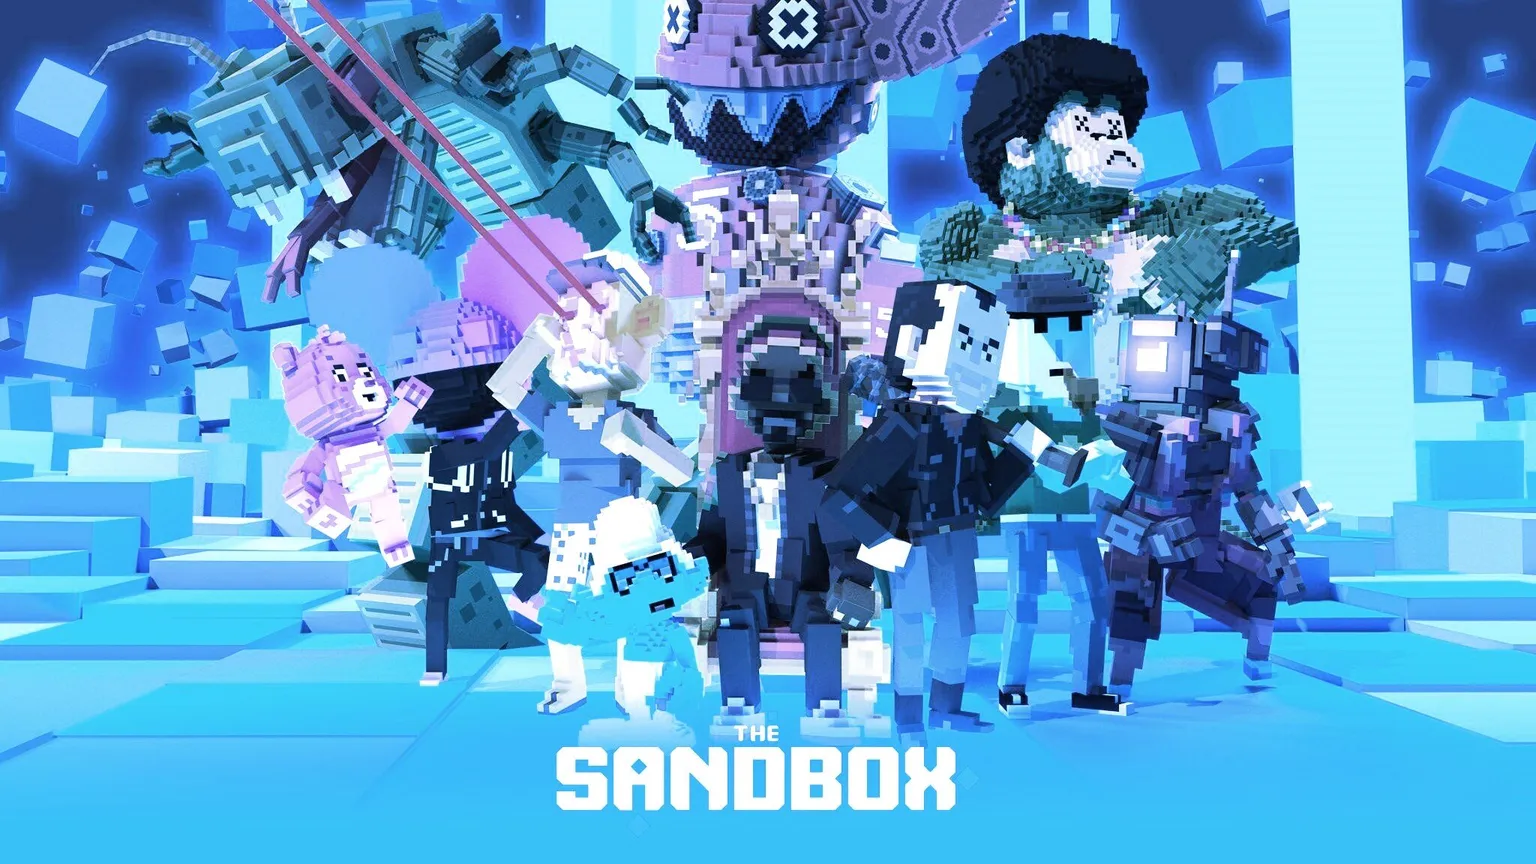 The Sandbox is an Ethereum-based metaverse game. Image: The Sandbox